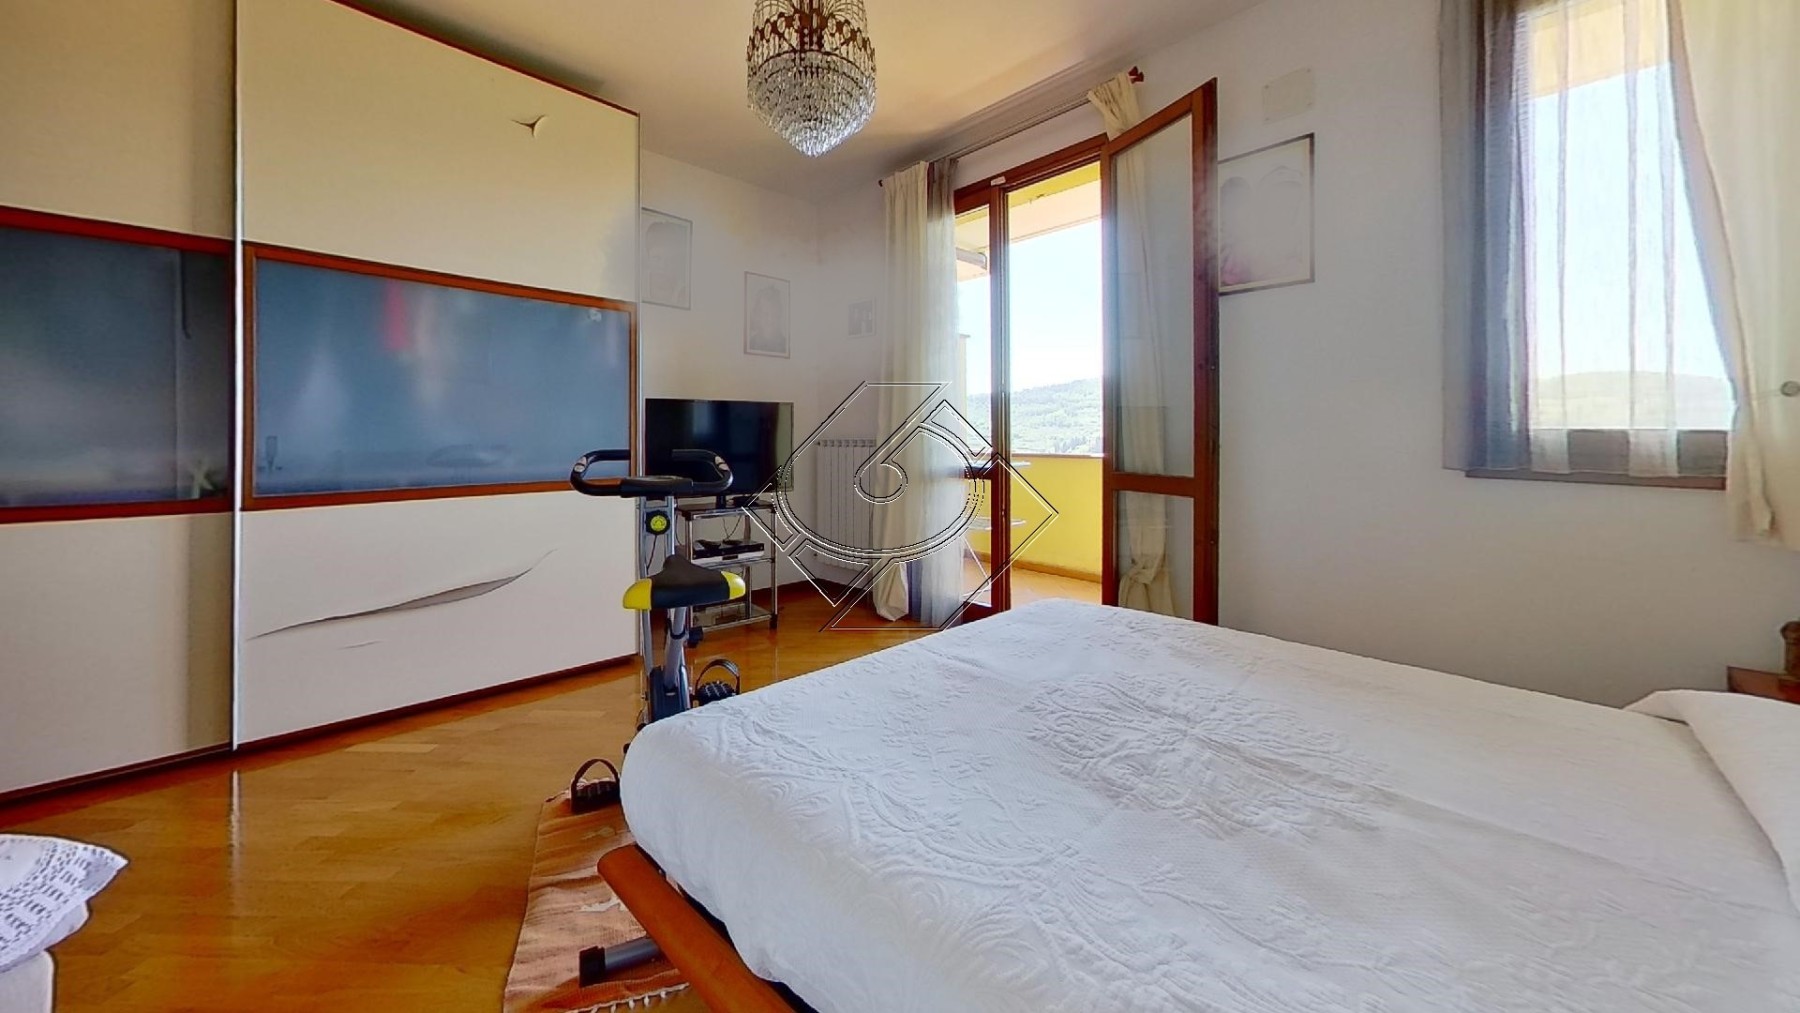 87C-Via-di-San-Romolo-Bedroom4